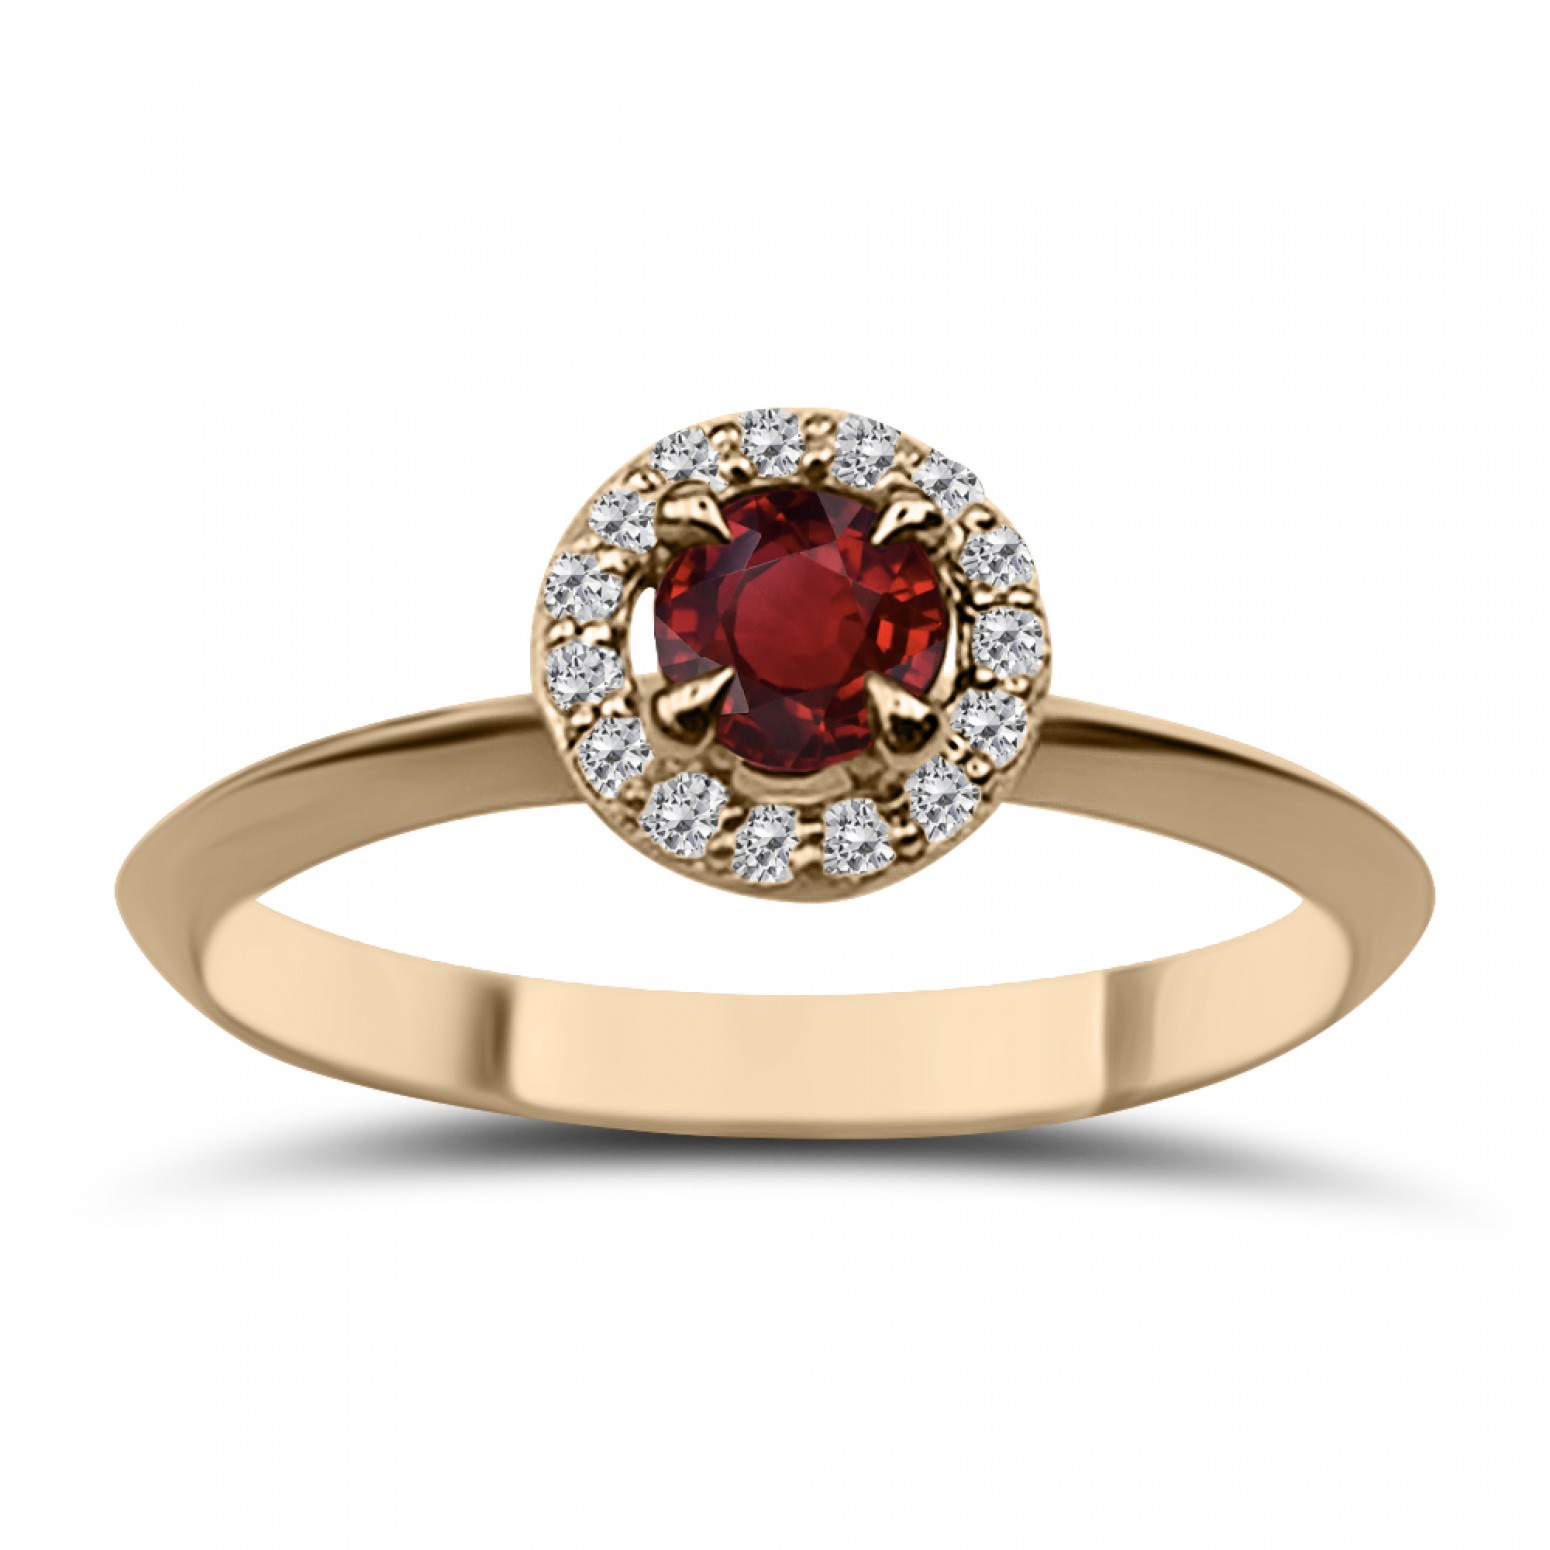 Μονόπετρο δαχτυλίδι Κ18 ροζ χρυσό με ρουμπίνι 0.27ct και διαμάντια VS1, G da3683 ΔΑΧΤΥΛΙΔΙΑ ΑΡΡΑΒΩΝΑ Κοσμηματα - chrilia.gr